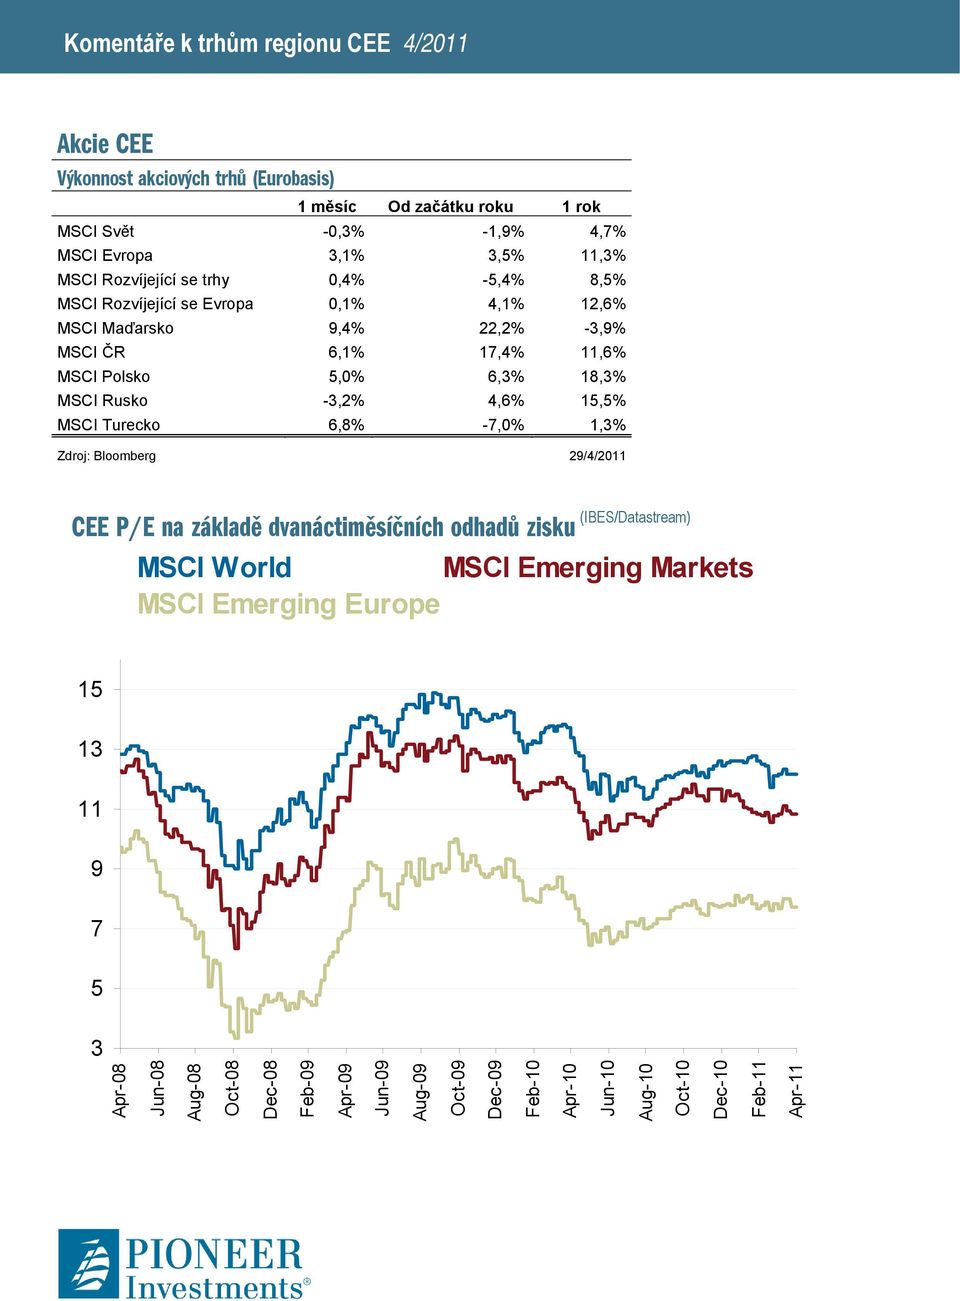 15,5% MSCI Turecko 6,8% -7,0% 1,3% Zdroj: Bloomberg 29/4/2011 CEE P/E na základě dvanáctiměsíčních odhadů zisku (IBES/Datastream) MSCI World MSCI Emerging Markets